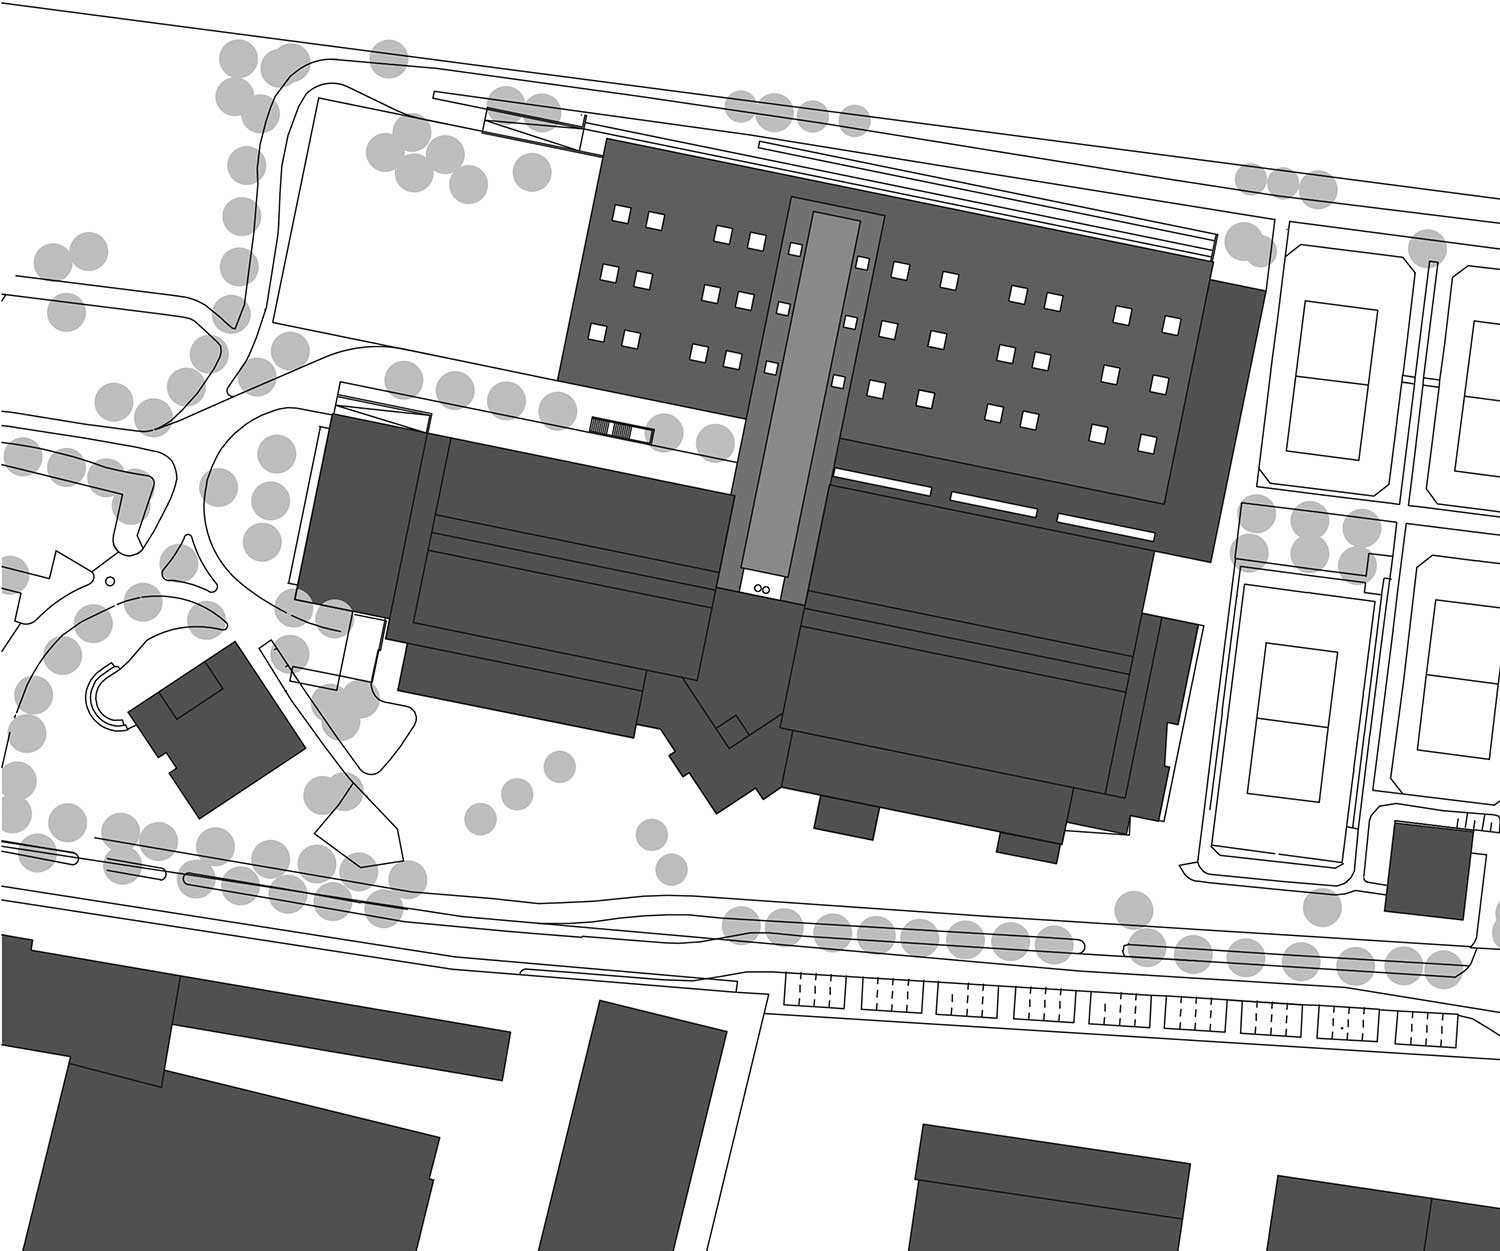 ssp Planung - Sportzentrum Unterföhring neubau einer kunstturner- und ringerhalle an eine bestehende sporthalle